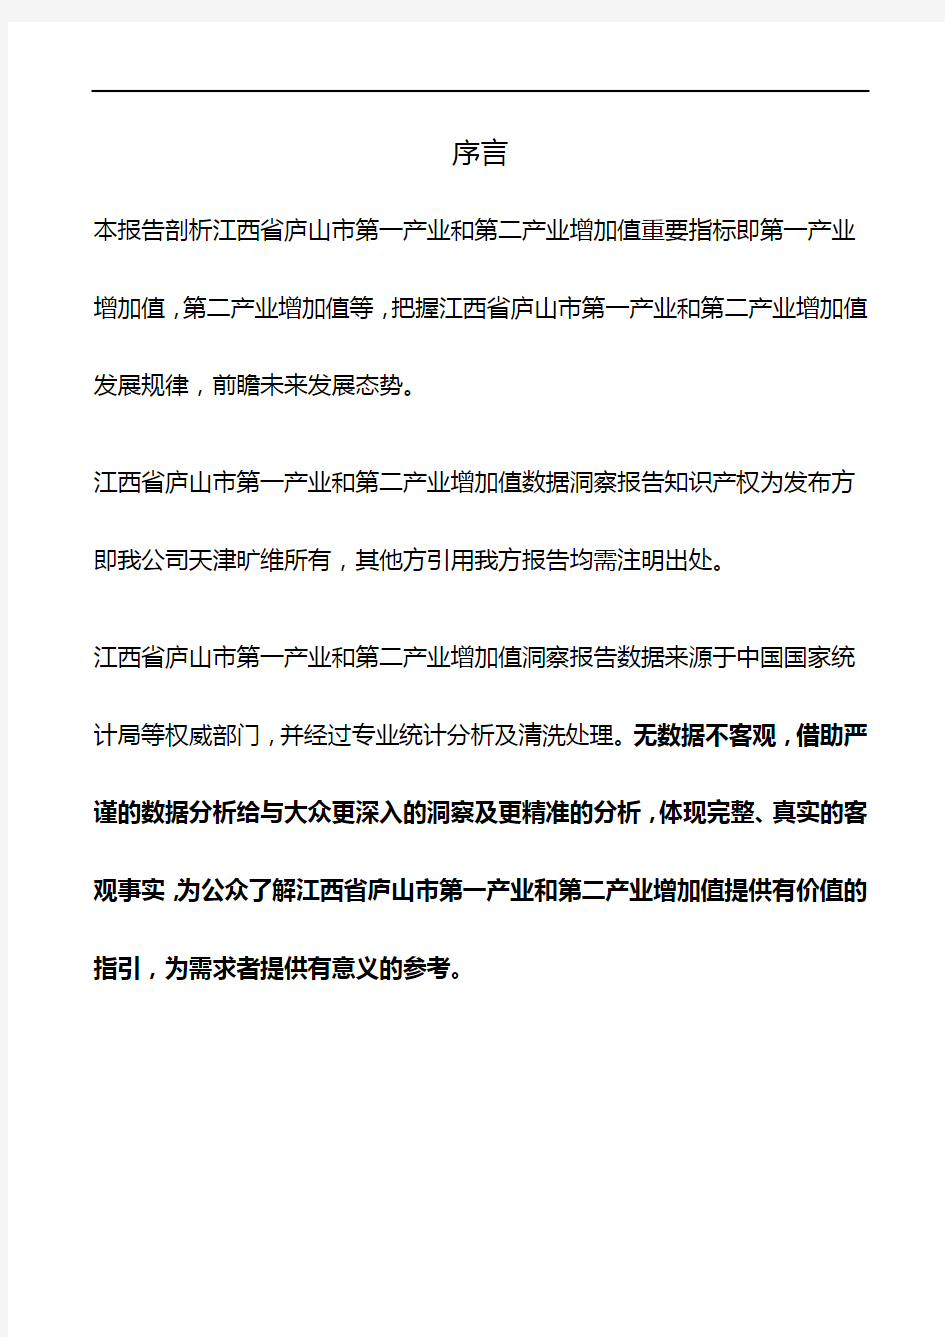 江西省庐山市第一产业和第二产业增加值3年数据洞察报告2019版